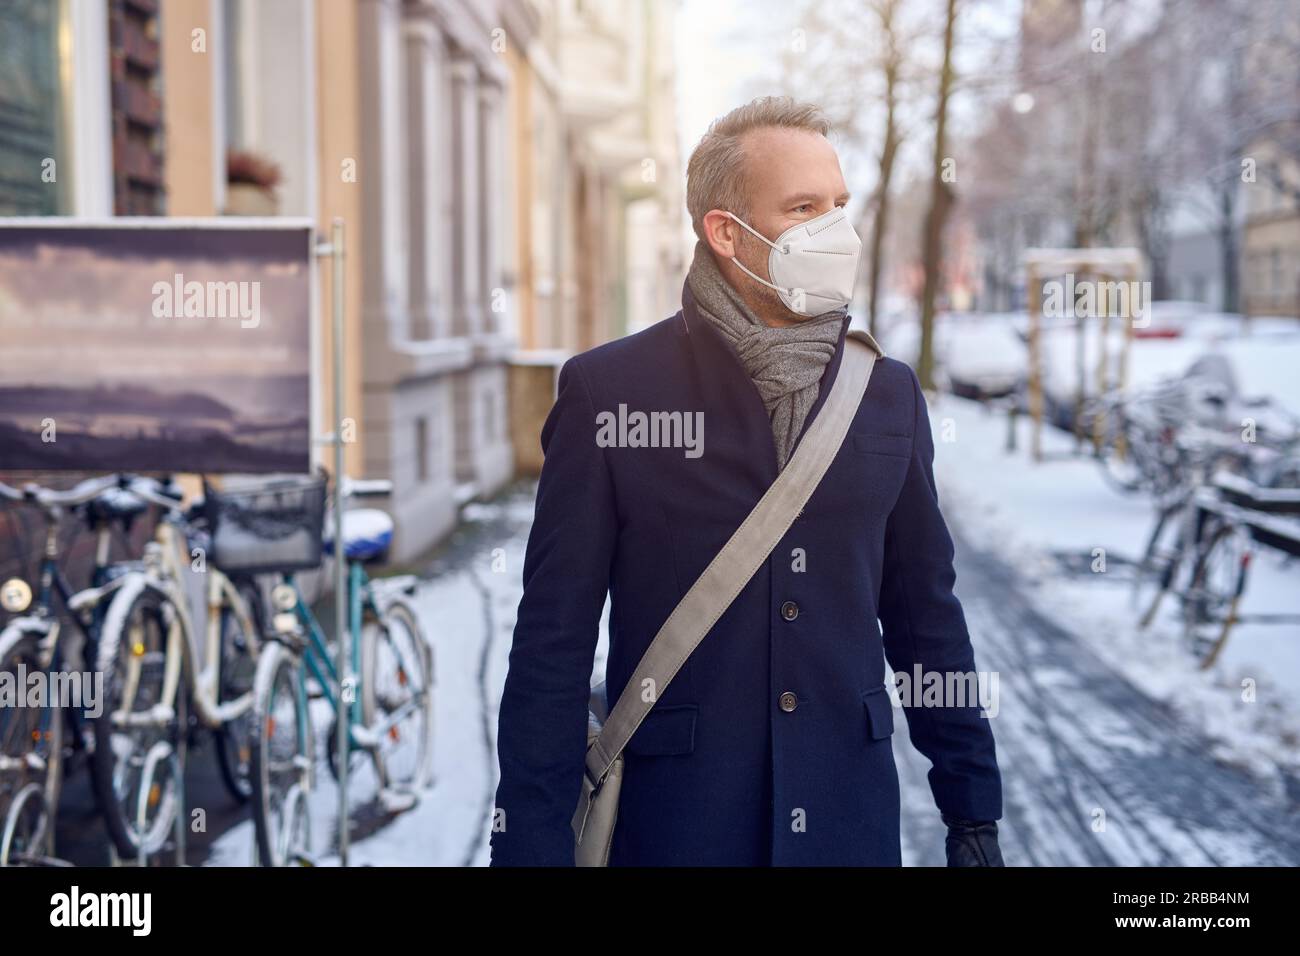 Homme portant un masque facial chirurgical de protection pendant la  pandémie de Covid-19 ou coronavirus et un pardessus d'hiver avec sac en  cuir sur l'épaule Photo Stock - Alamy